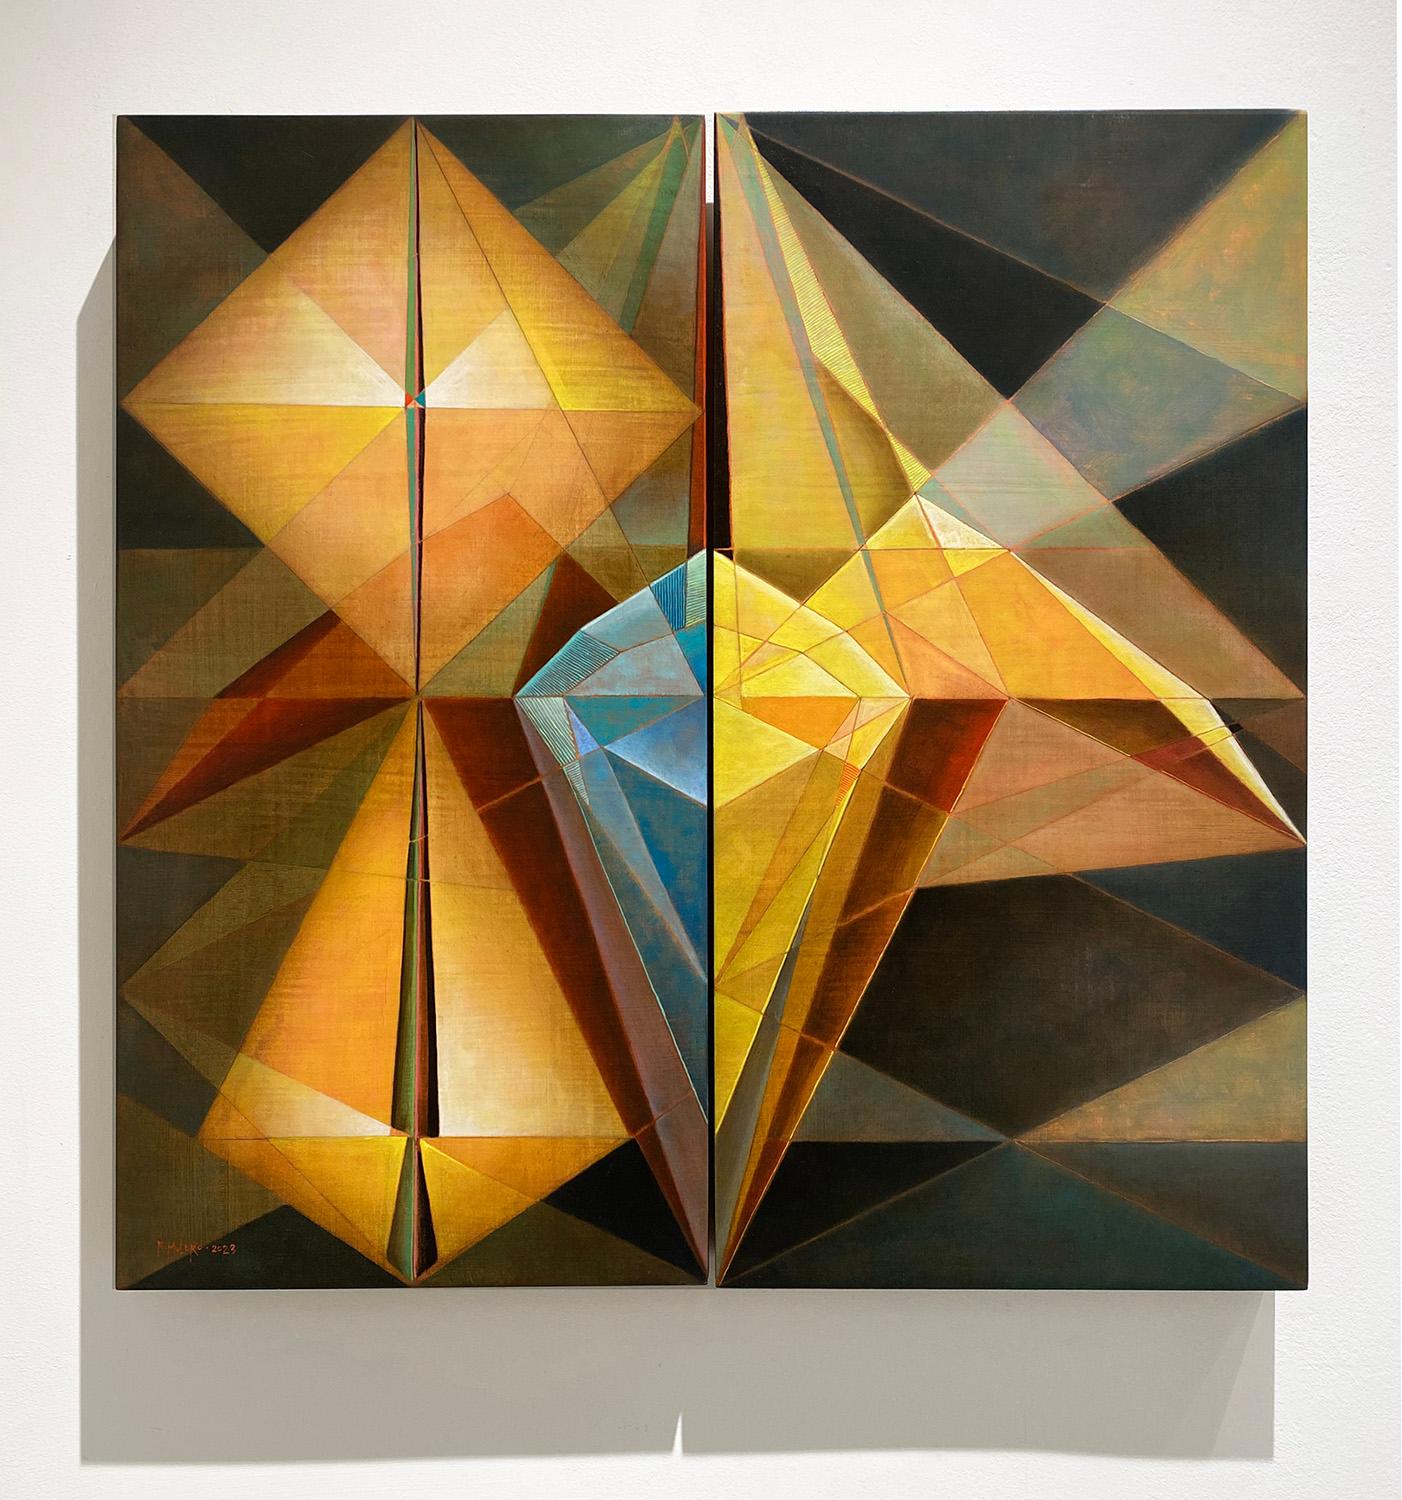 Iris (Zeitgenössisches abstraktes geometrisches Gemälde, Diptychon in Öl) von Ricardo Mulero
24 x 24,5 x 1,75 Zoll
Öl auf zwei Tafeln
Kein Rahmen erforderlich
Signiert in der linken unteren Ecke

Zeitgenössisches abstraktes geometrisches